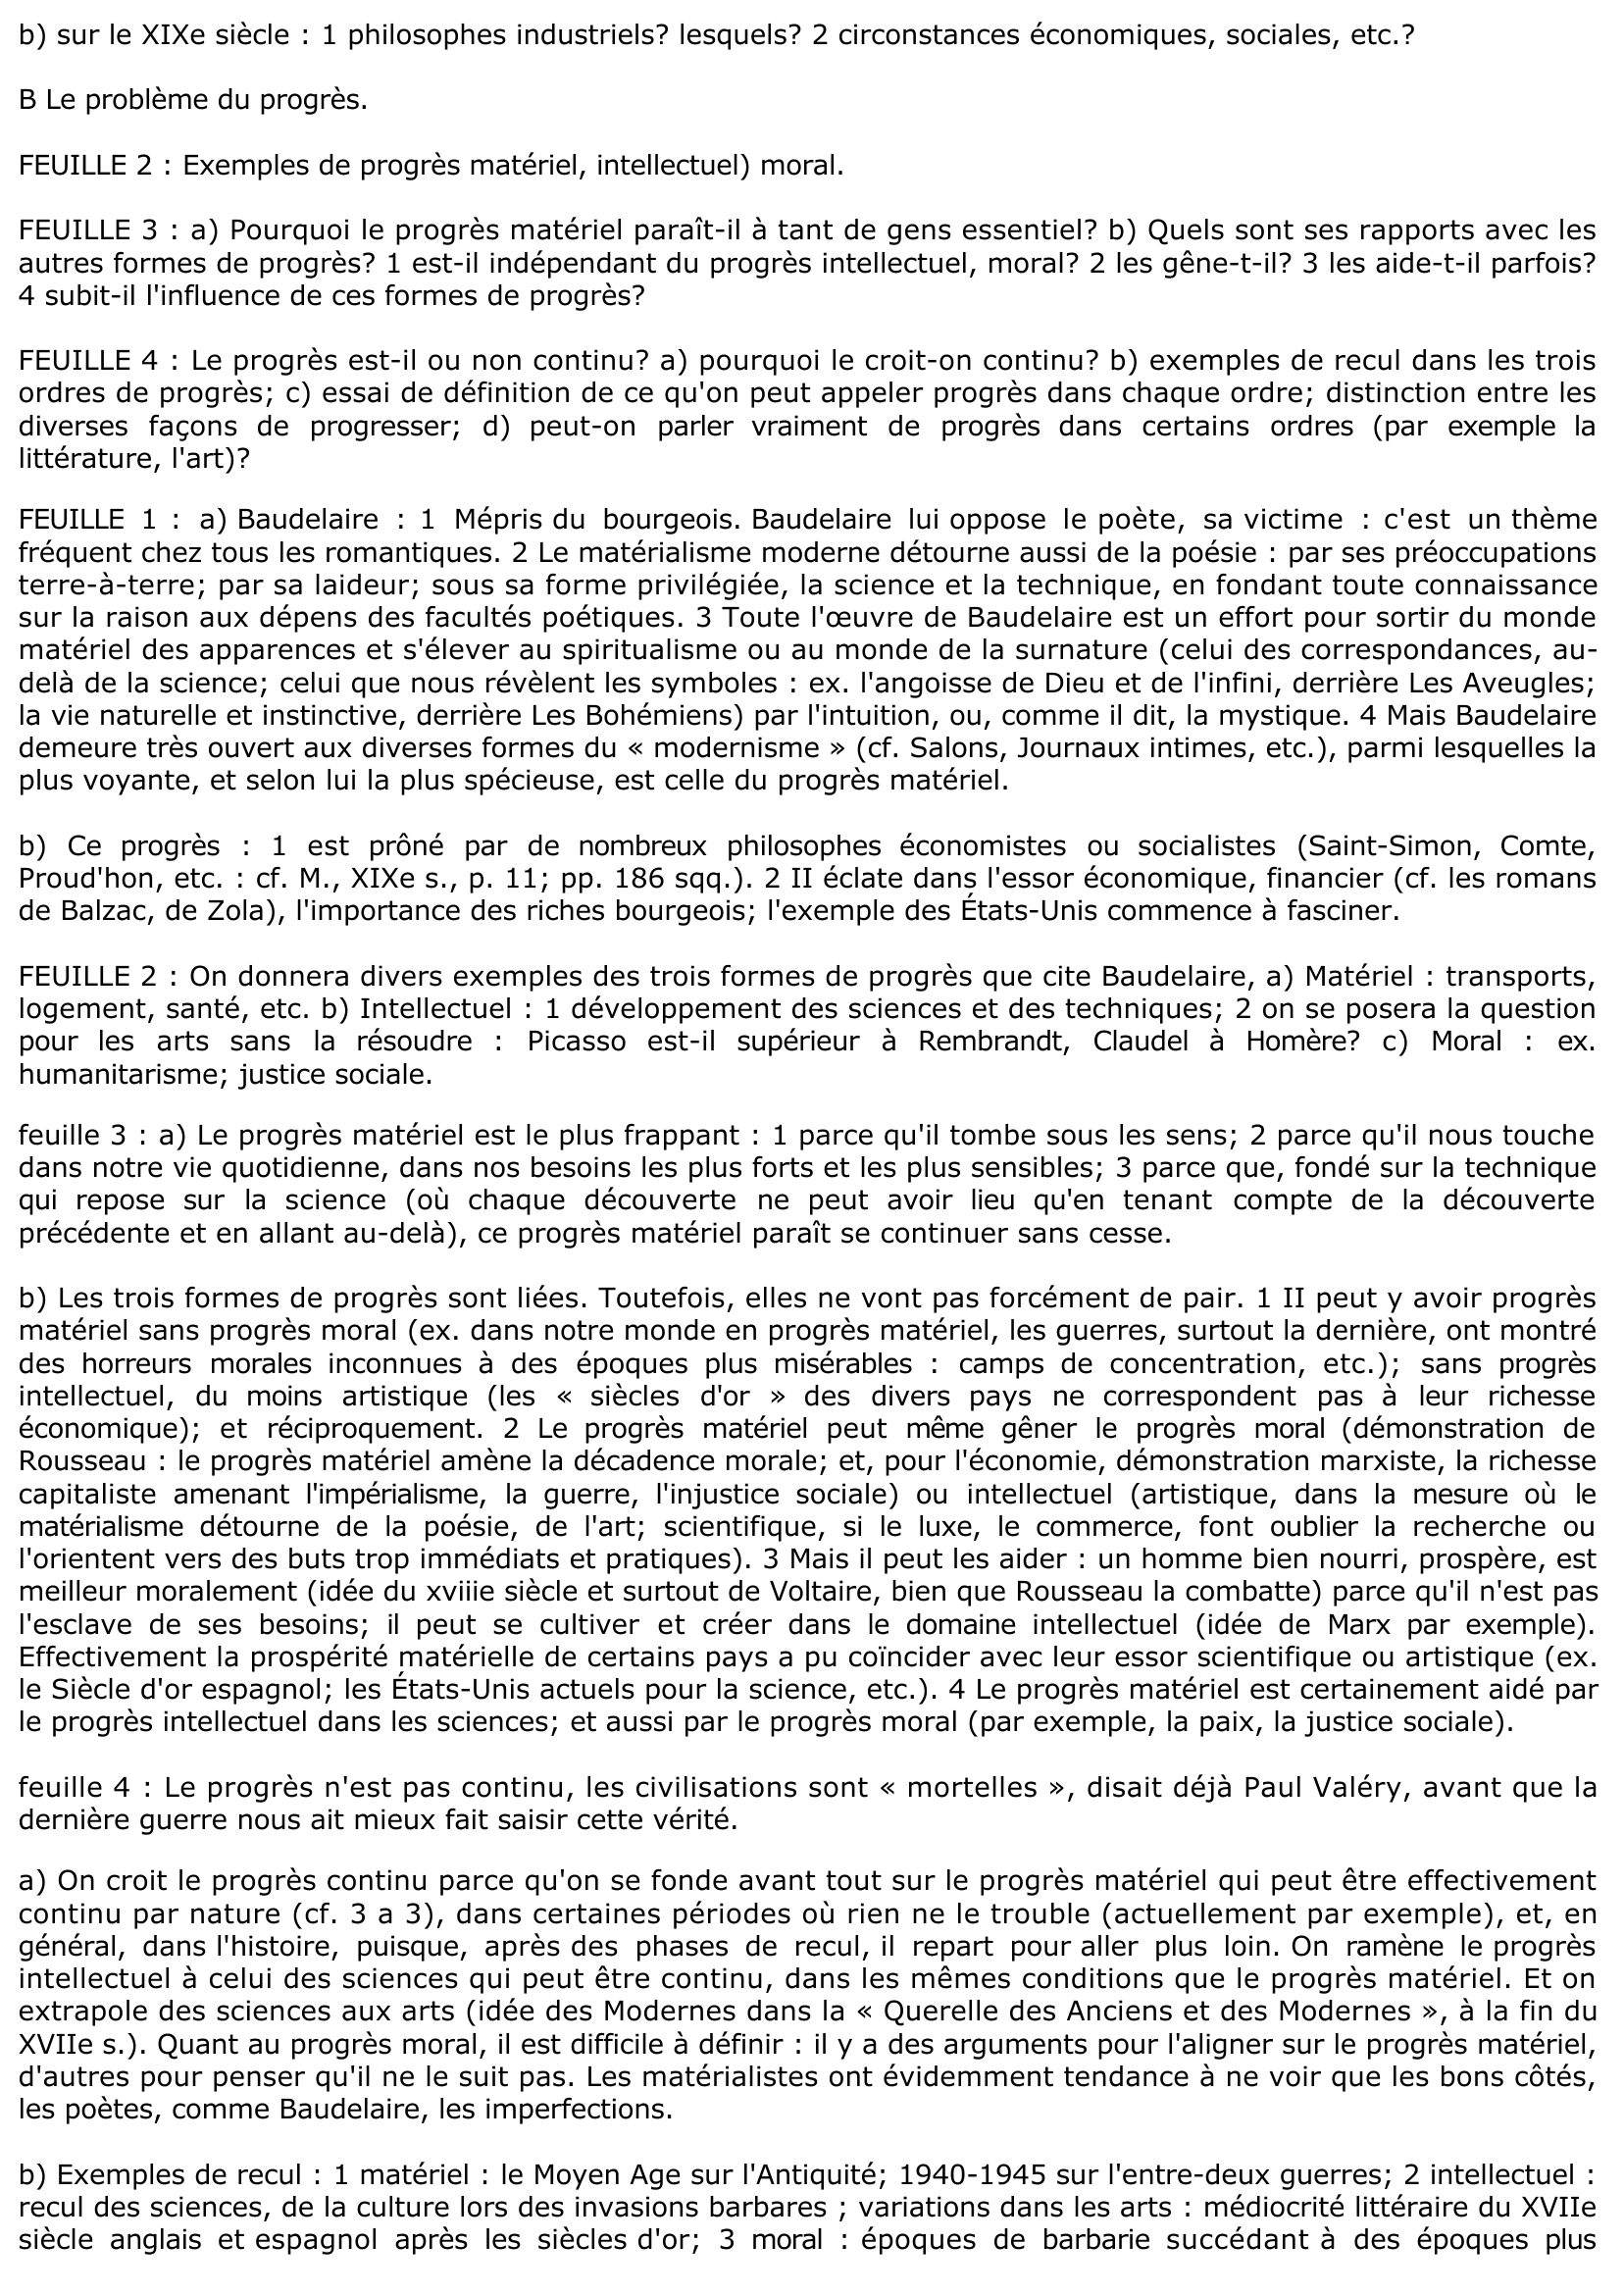 Prévisualisation du document Le progrès (Baudelaire, Exposition universelle de 1855) - Commentaire